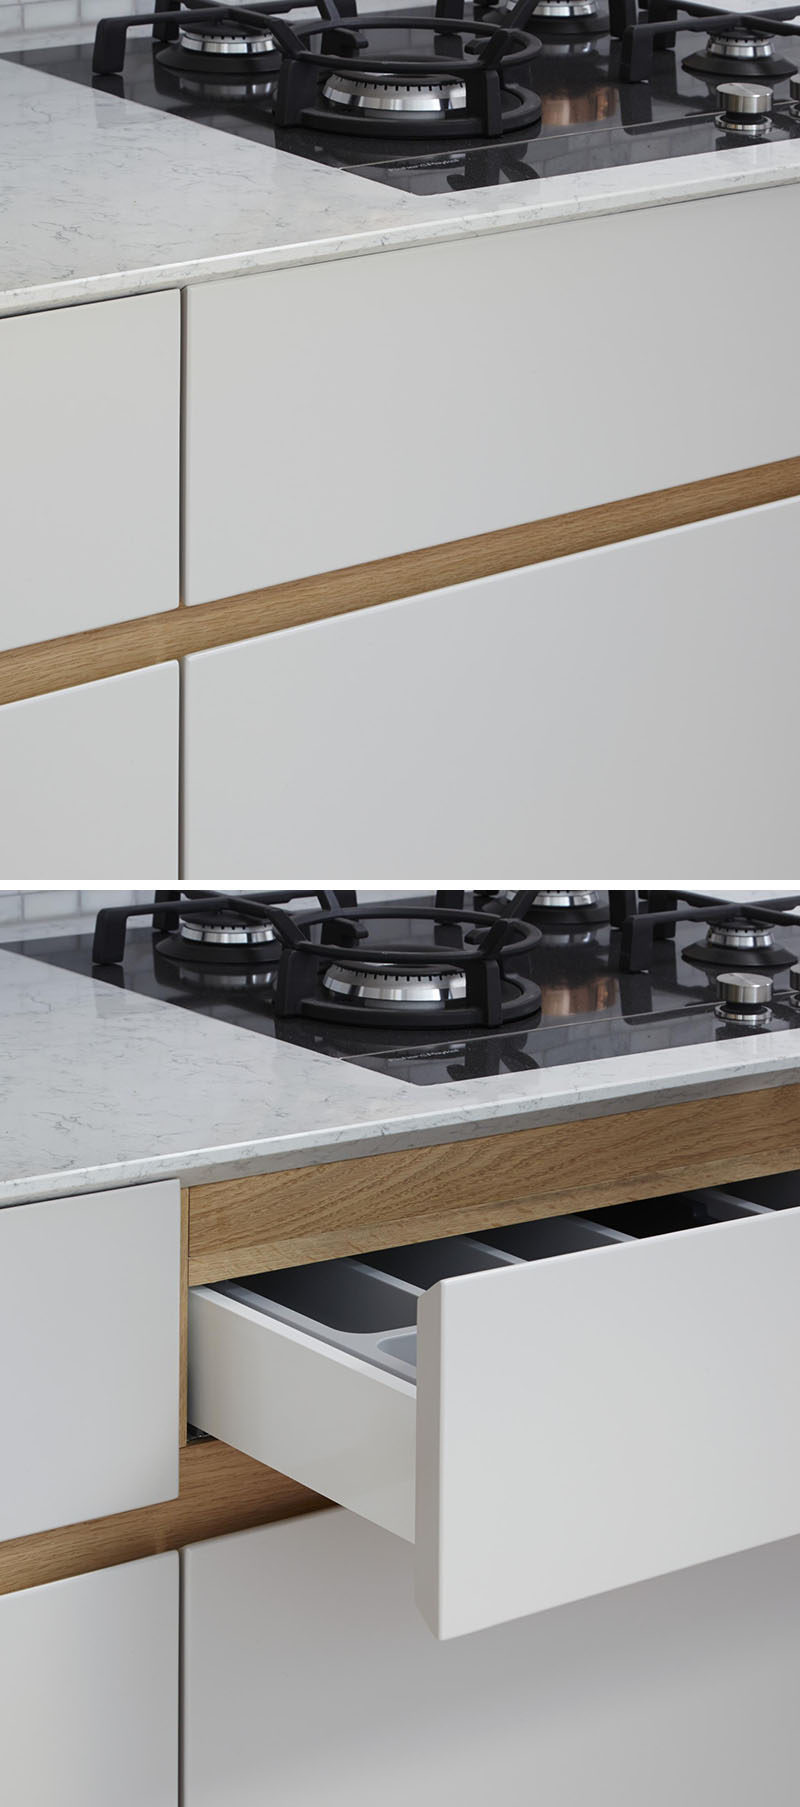 Идея дизайна кухни - Альтернативы фурнитуры для шкафов // Включите углубление в дизайн кухонных шкафов.